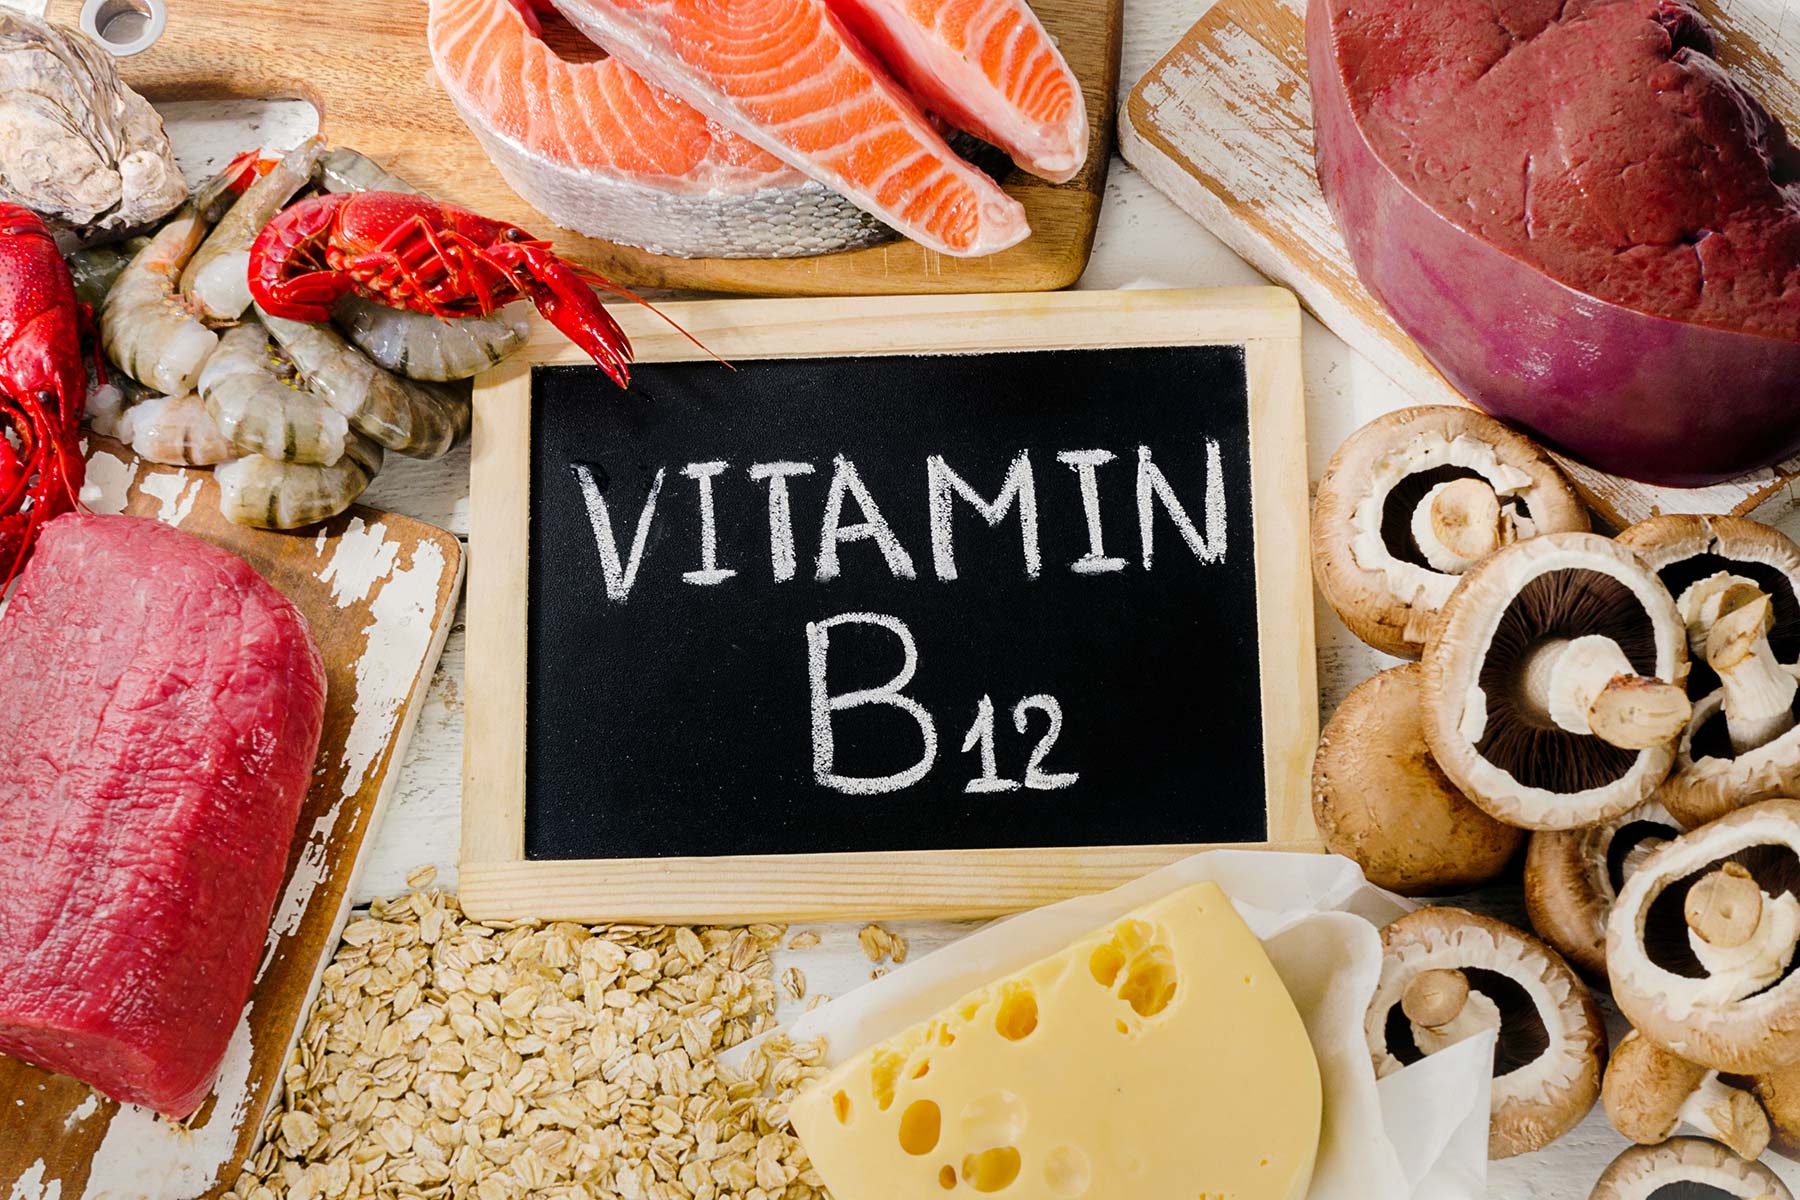 Cung cấp thêm vitamin B12 cho phụ nữ trung niên